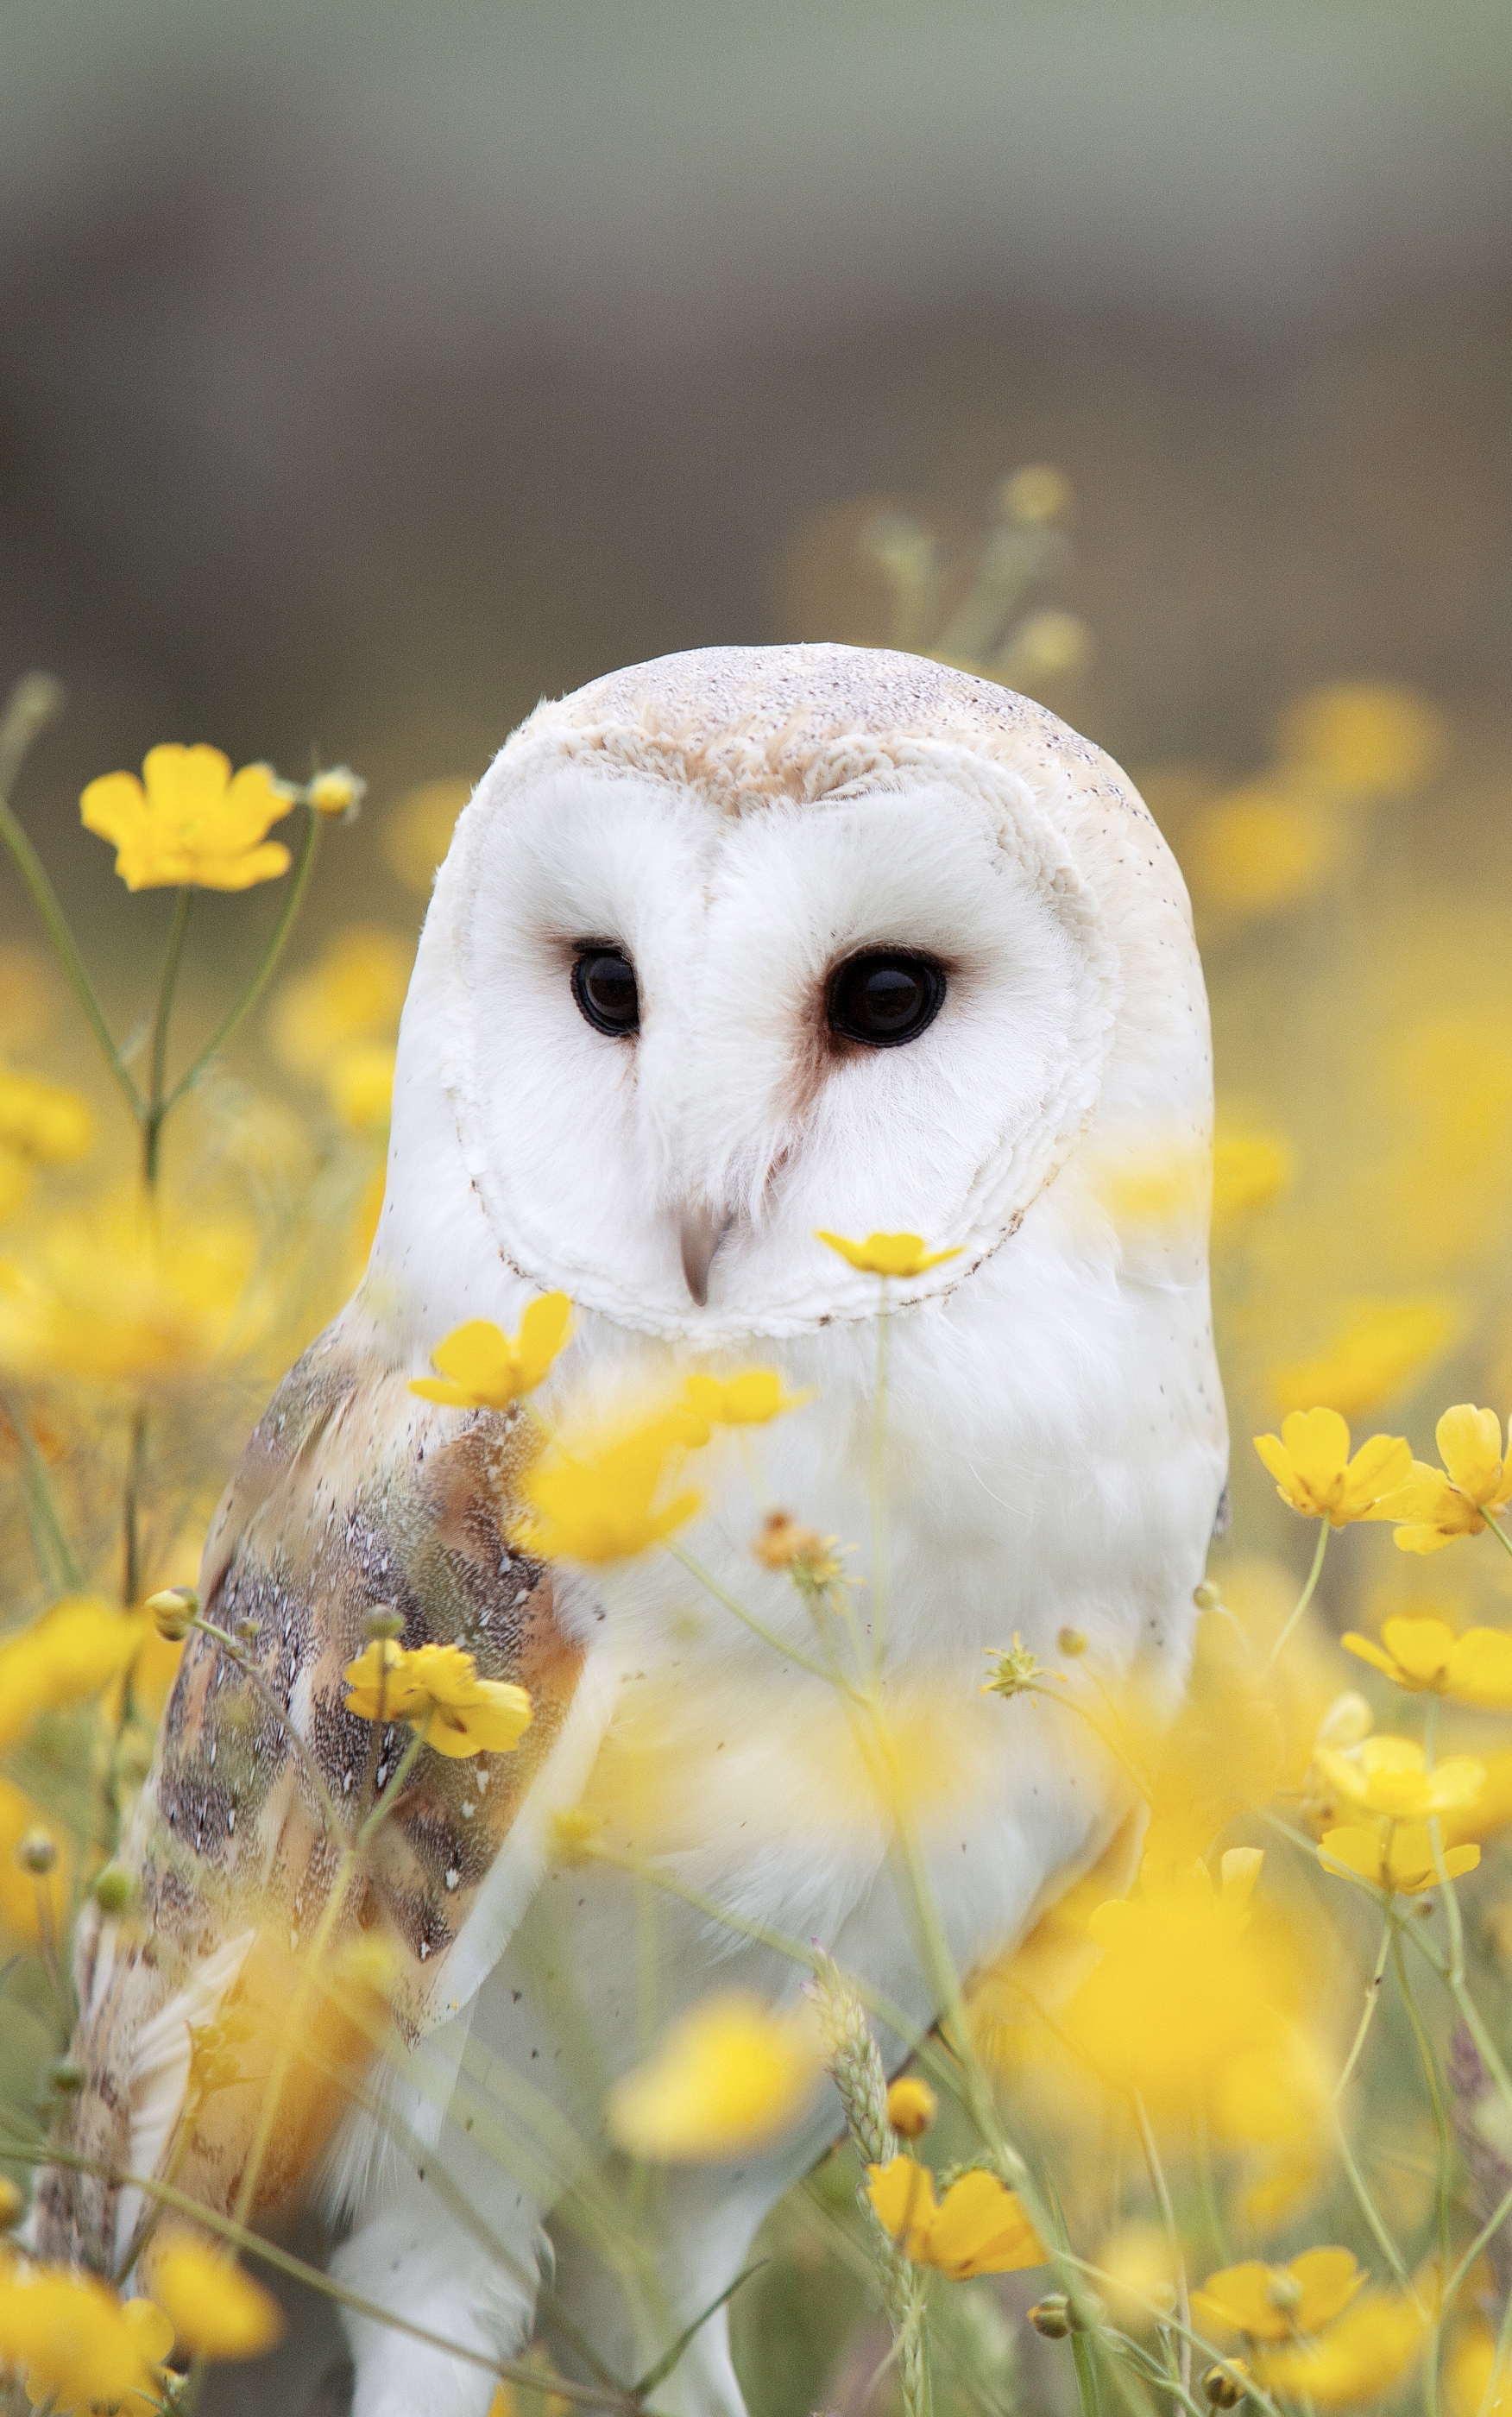 Download mobile wallpaper Birds, Owl, Flower, Bird, Animal, Yellow Flower, Barn Owl for free.